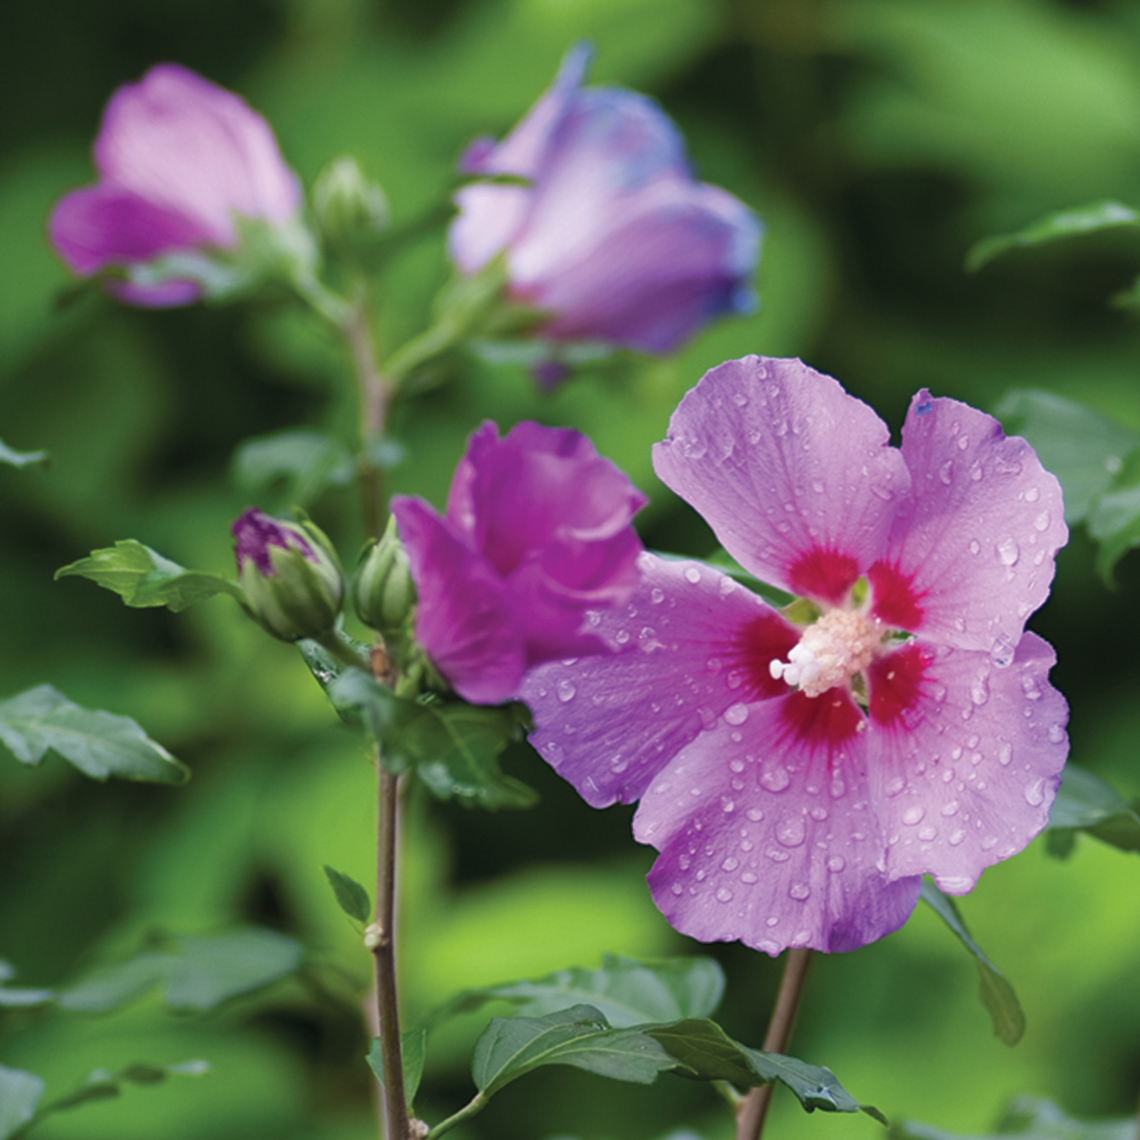 Closeup of the violet pink flower of Violet Satin rose of Sharon